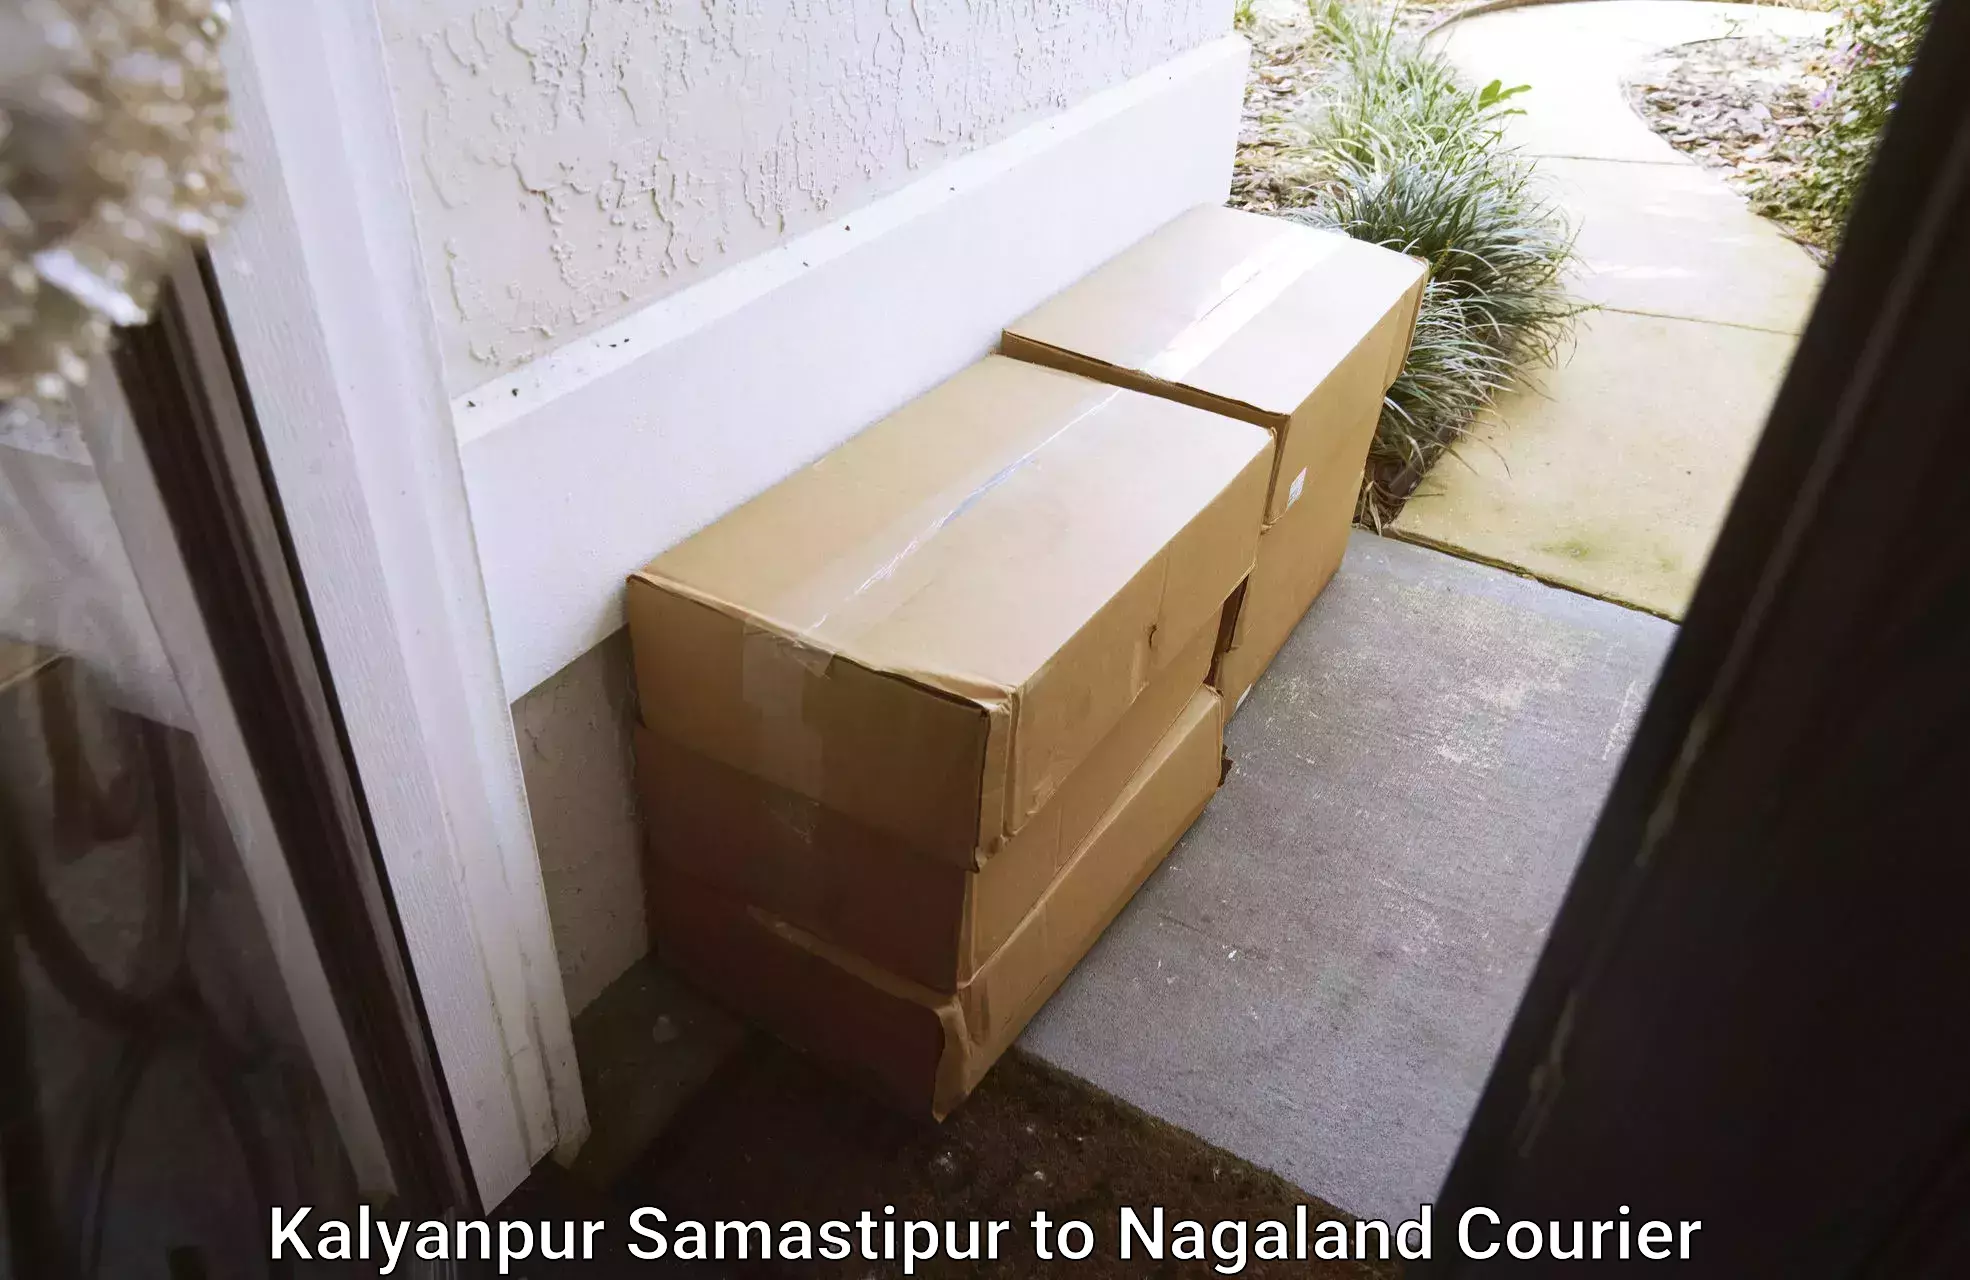 Residential moving experts Kalyanpur Samastipur to Kohima